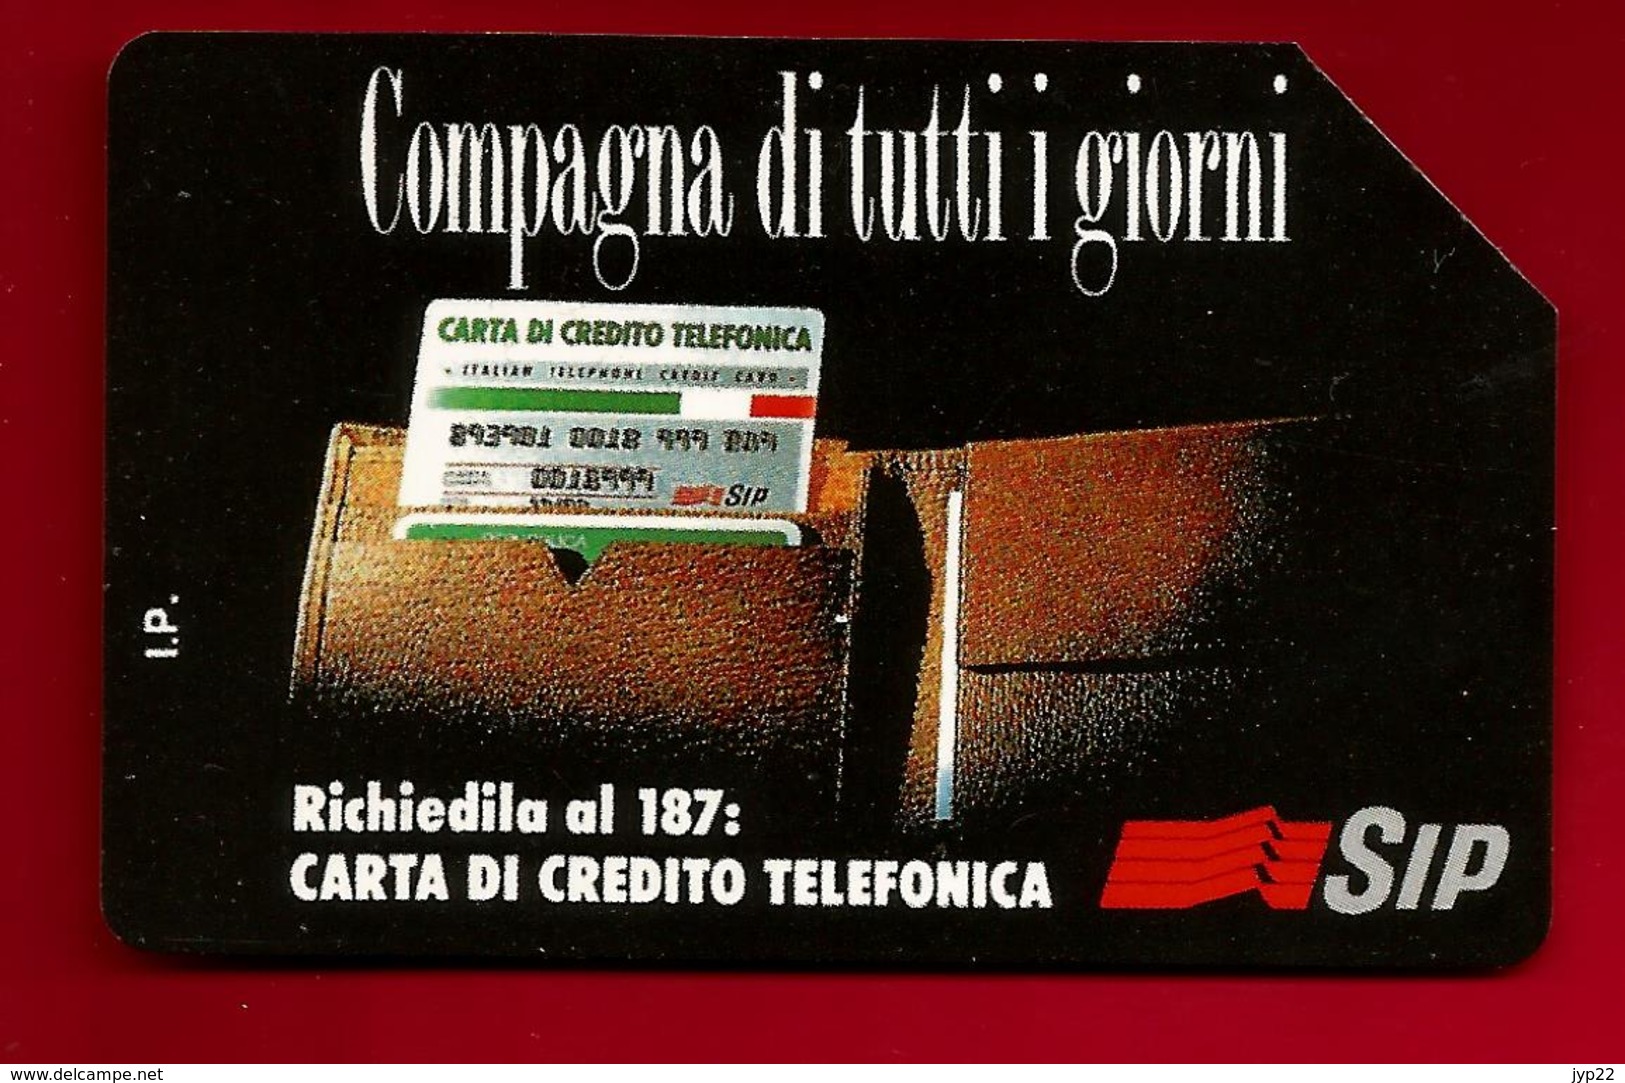 Télécarte Téléphone Italie Compagna Di Tutti I Giorni Carta Di Credito Telefonica 5000 Lire - Sip - Validité 31-12-1995 - A Identifier